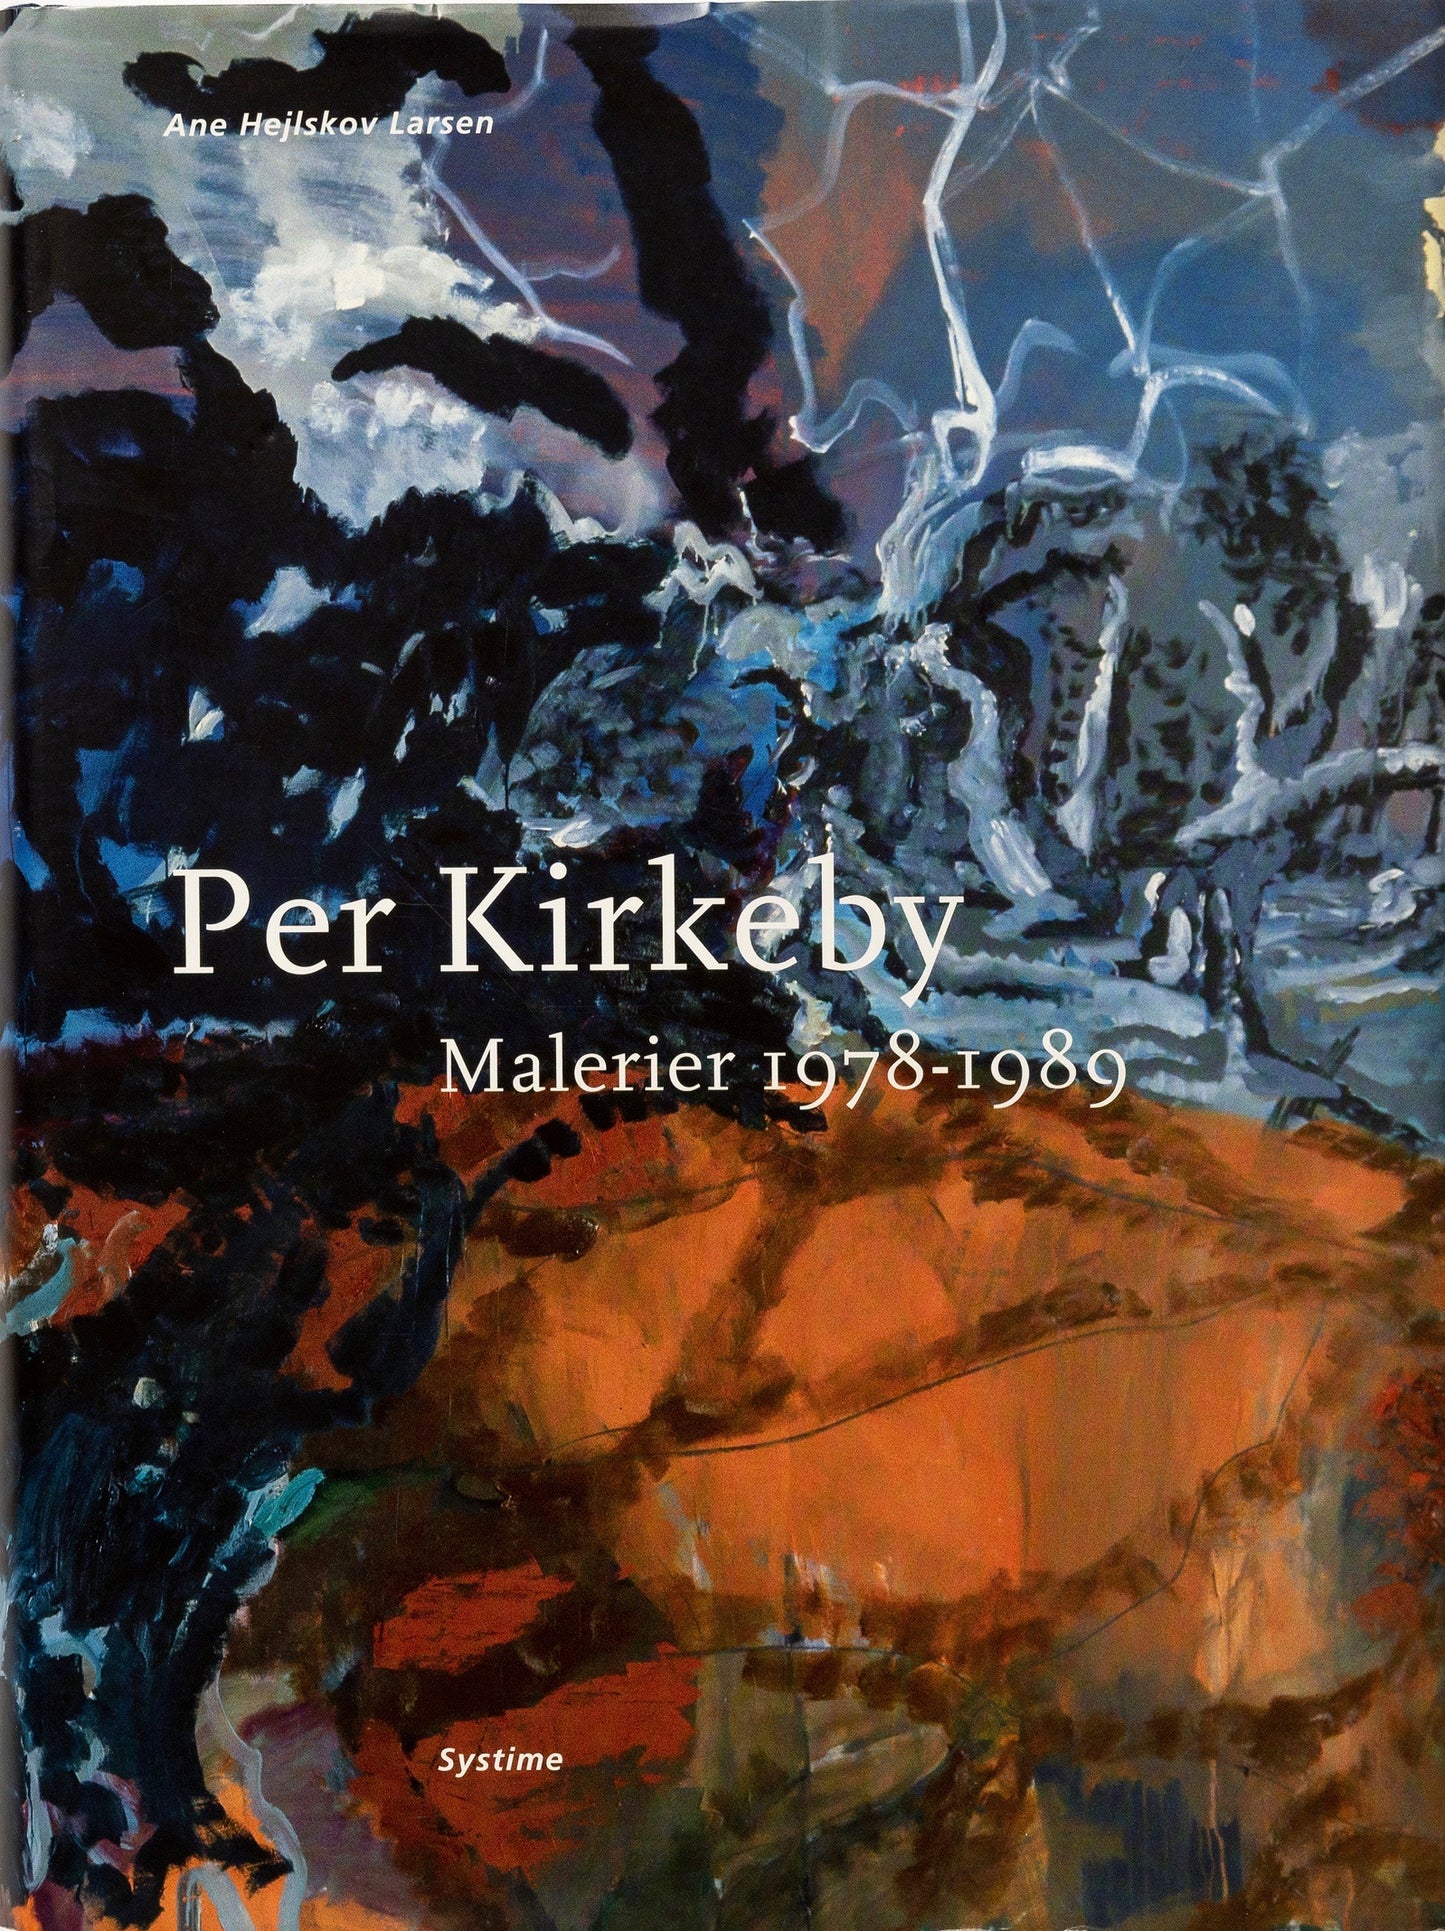 Per Kirkeby – Malerier 1978-1989